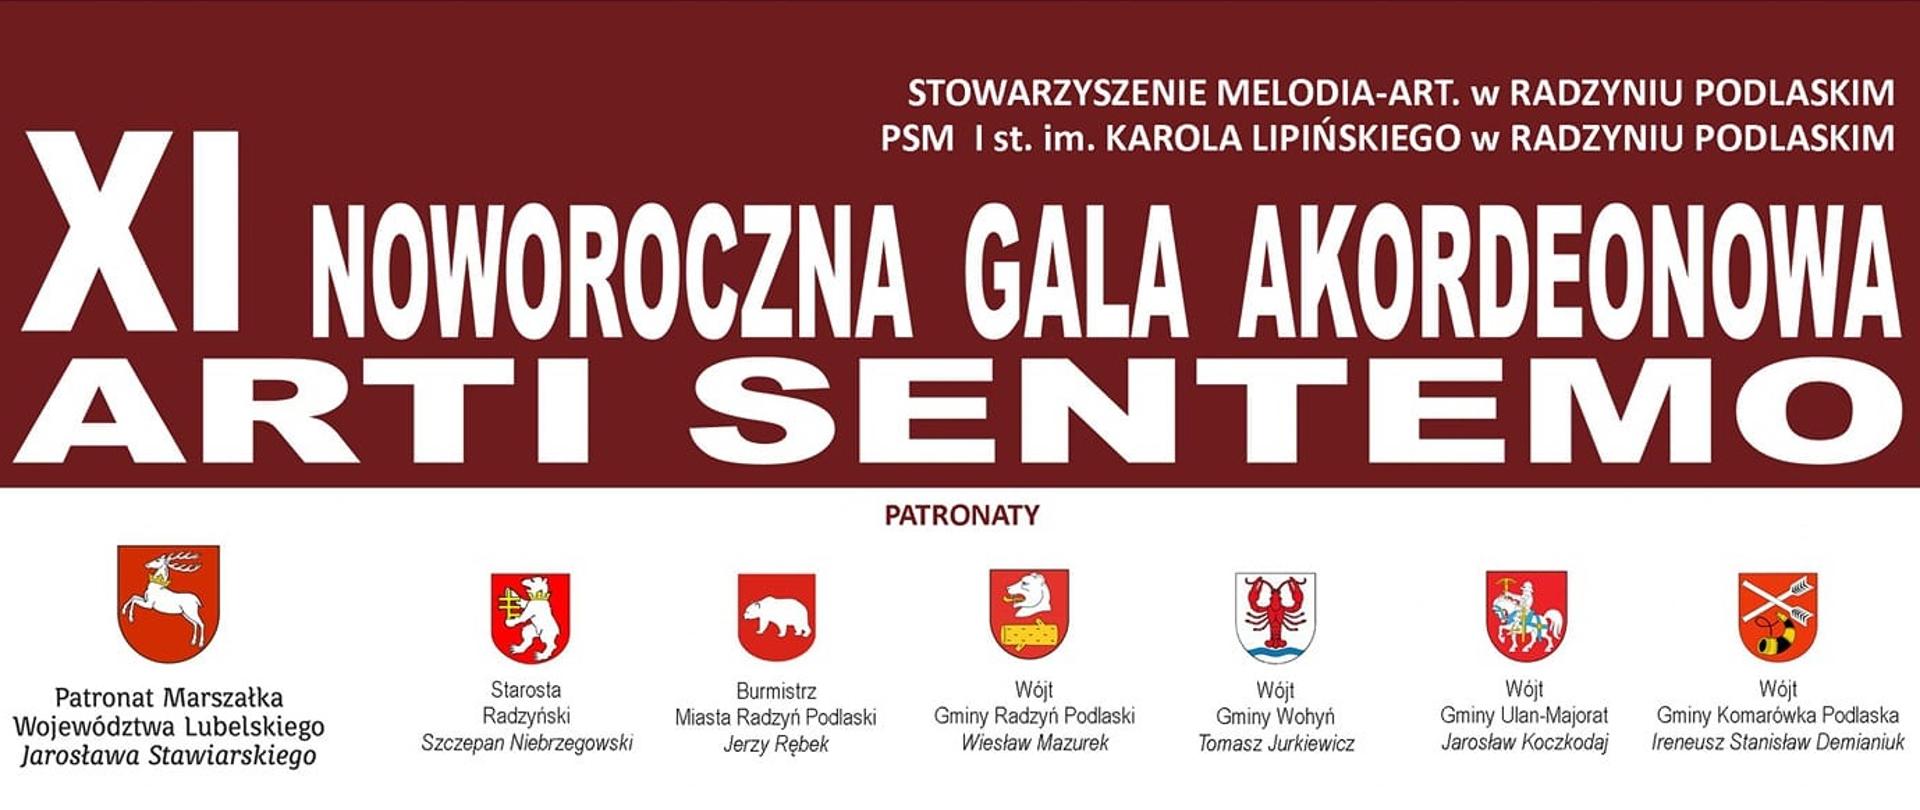 Banner przedstawiający zawierający napis XI Noworoczna Gala Akordeonowa Arti Sentemo oraz patronów wydarzenia